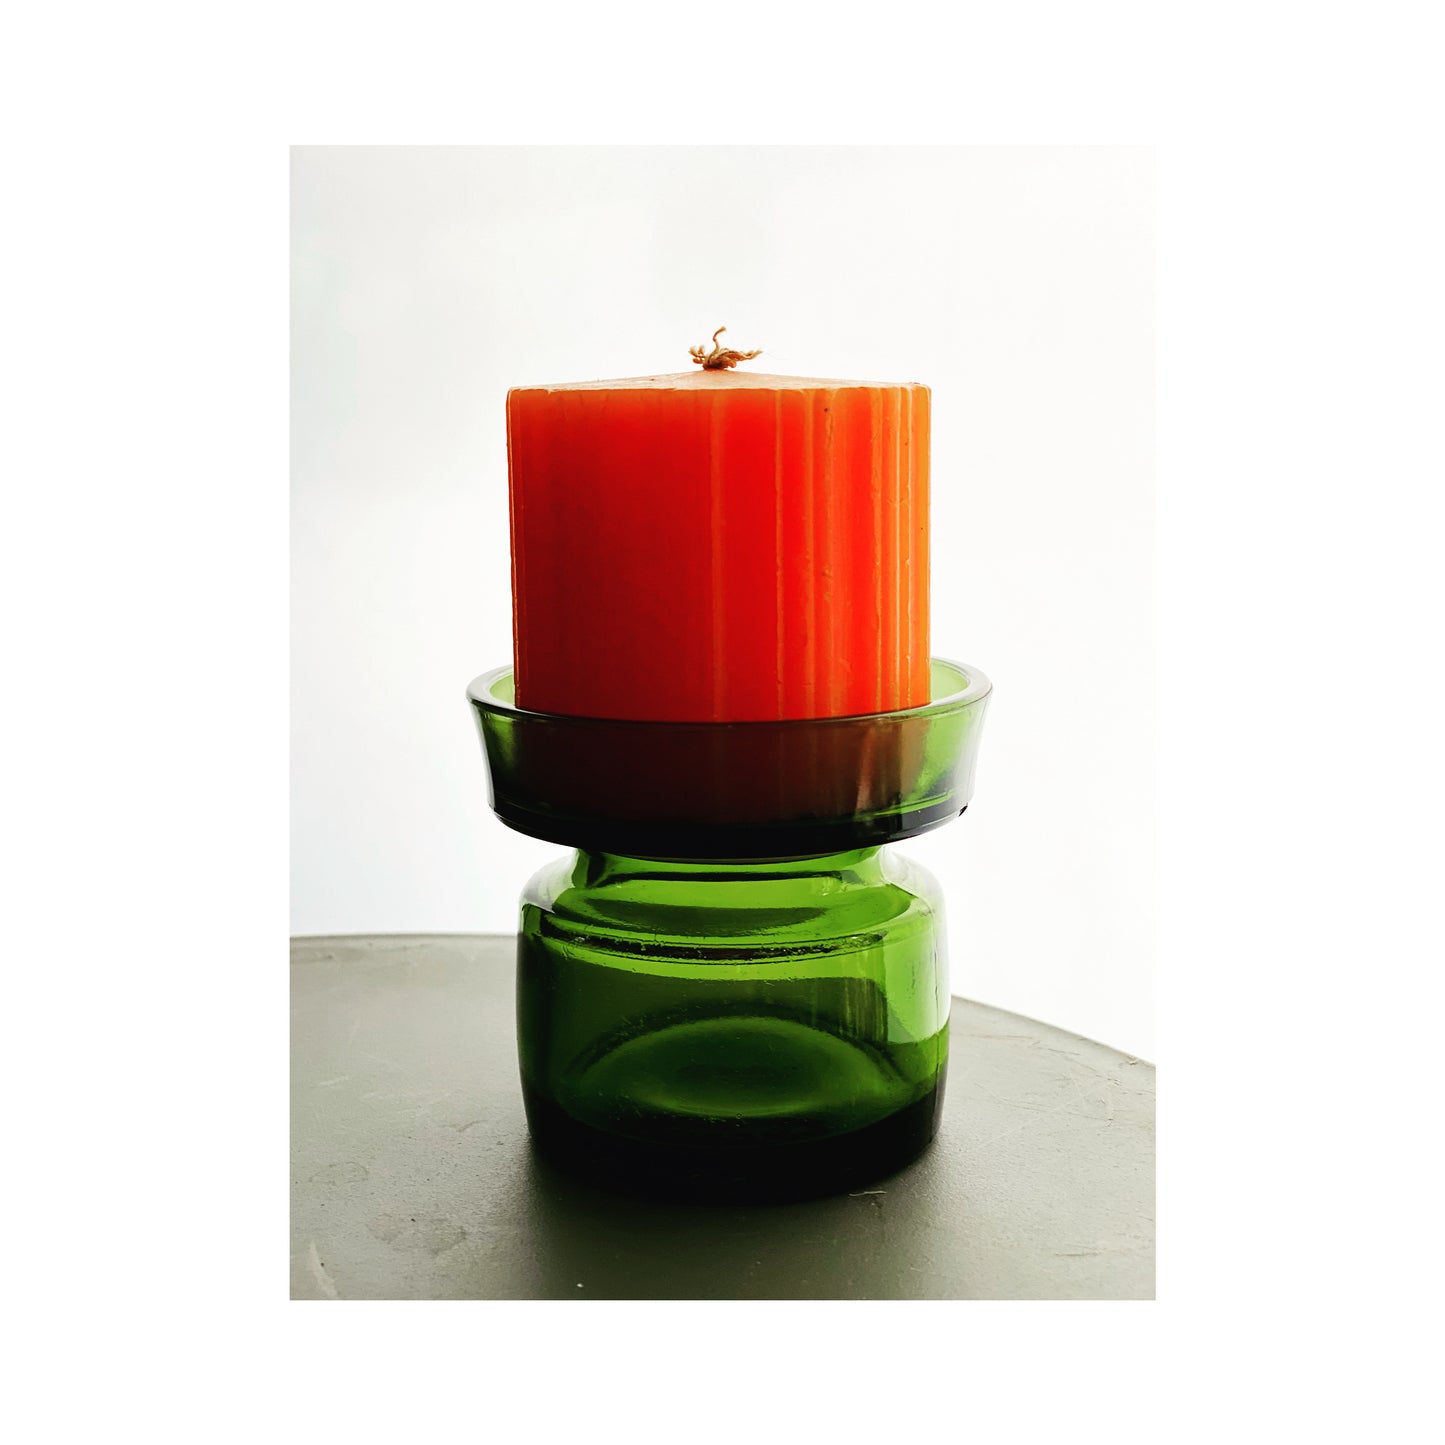 Dansk Design Candleholder with Original Candle Designed by Jens Harald Quistgaard for Dansk Design in the 1960s.